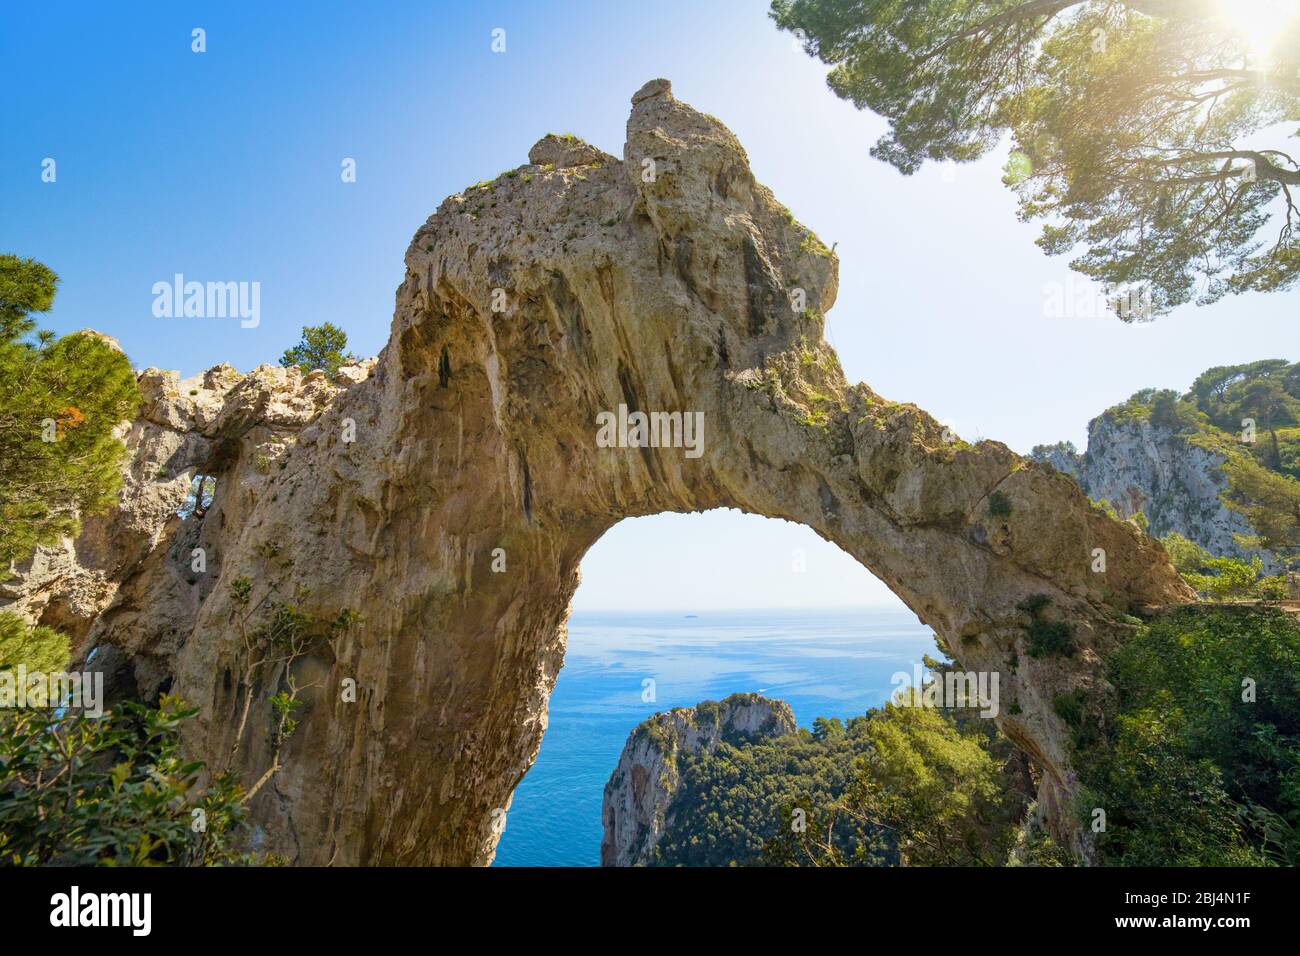 Incredibile fenomeno geologico naturale - Arco Naturale è arco naturale sulla costa dell'isola di Capri. Foto Stock